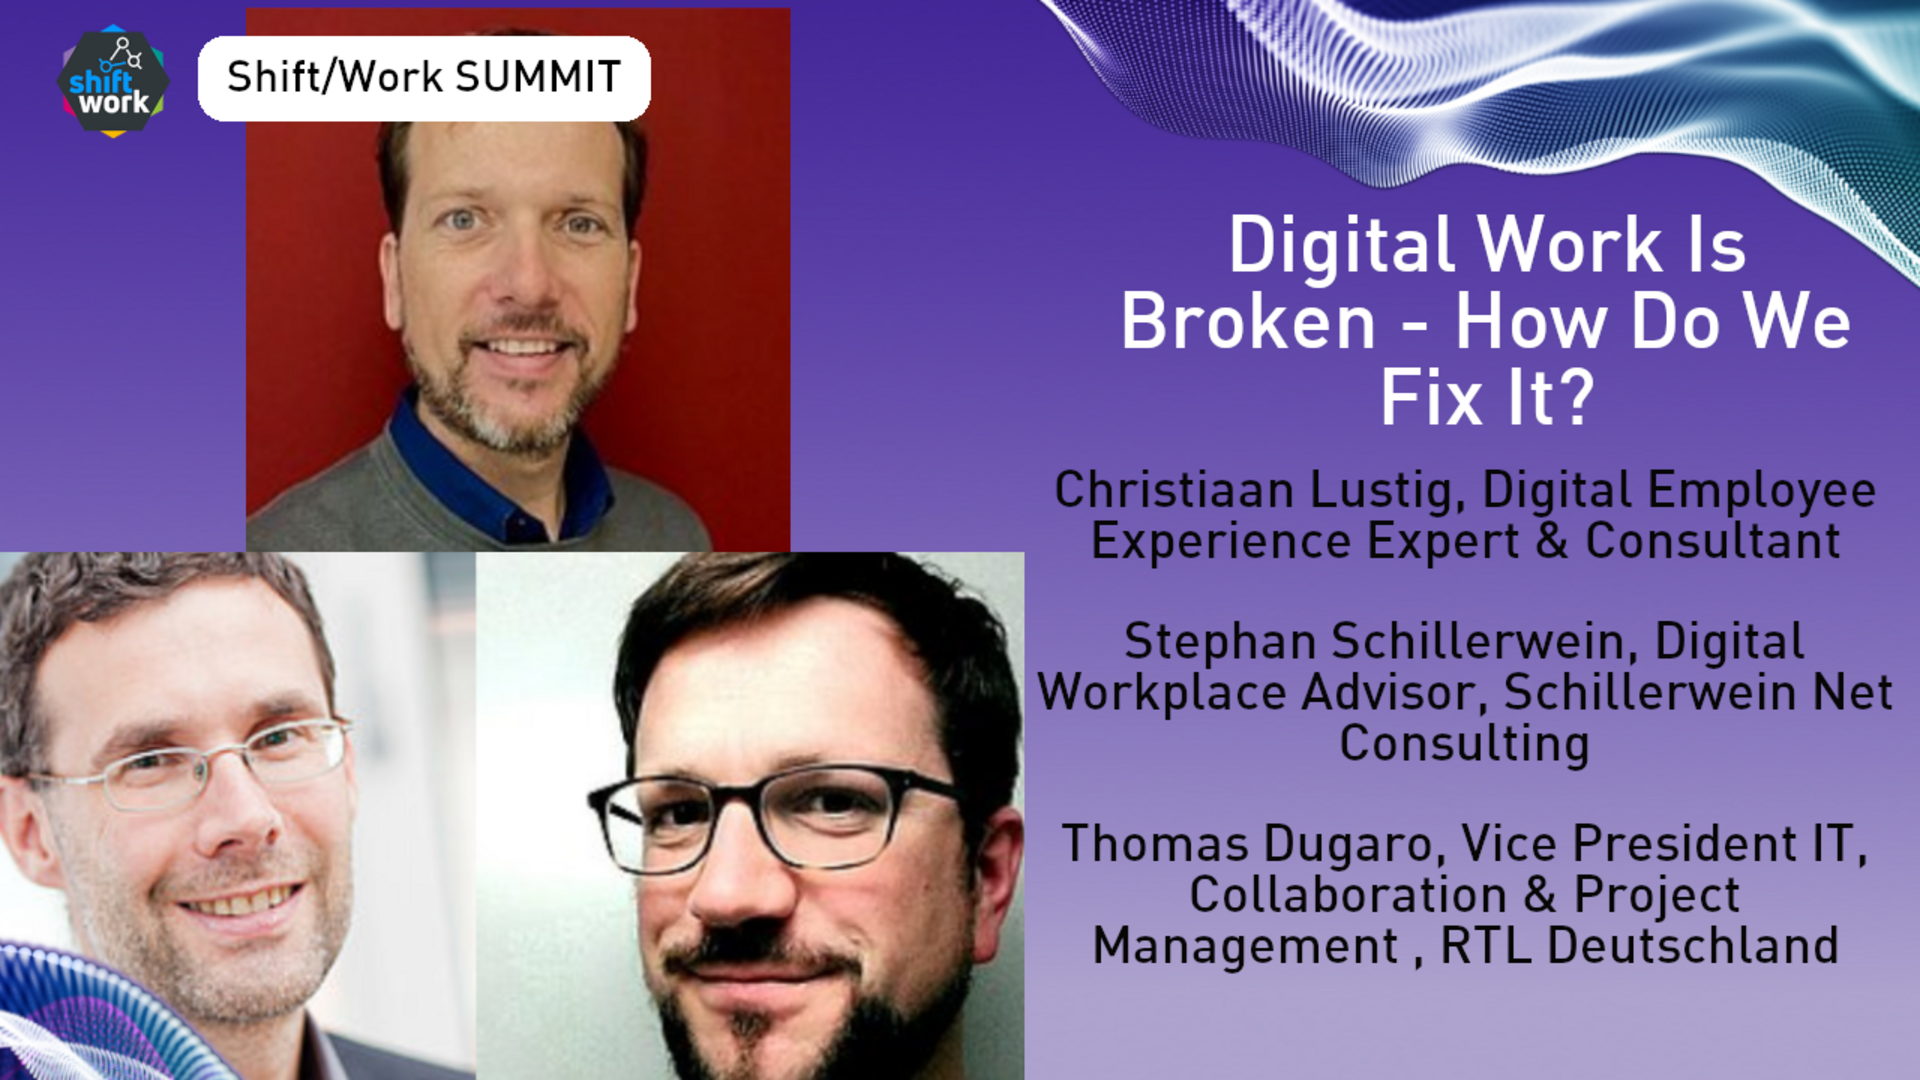 Digital Work Is Broken - How Do We Fix It?